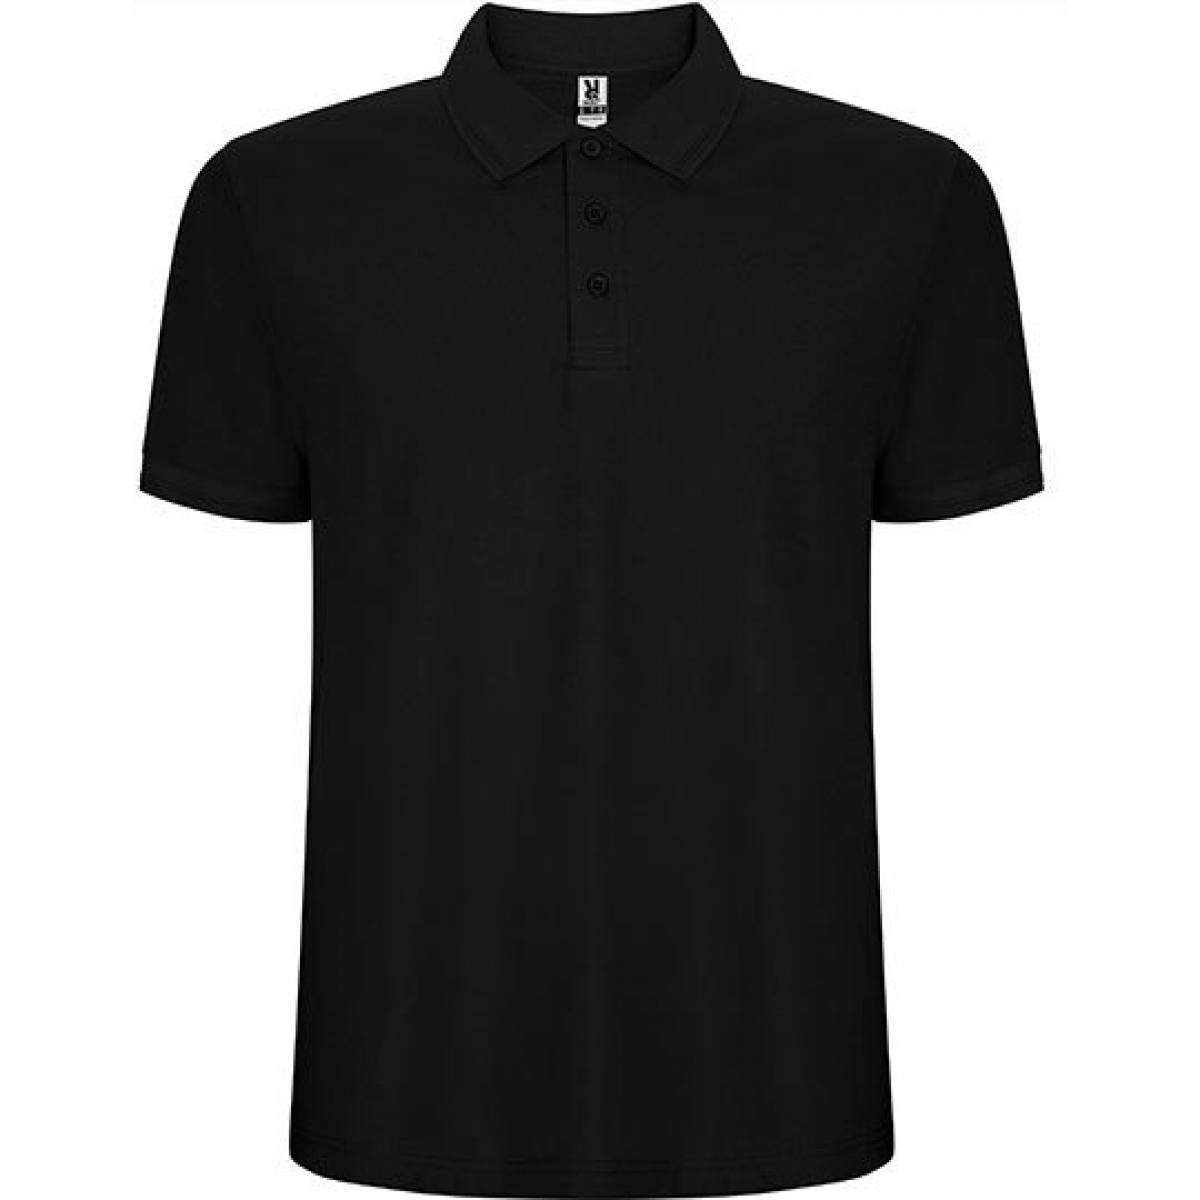 Hersteller: Roly Herstellernummer: PO6609 Artikelbezeichnung: Pegaso Premium Poloshirt - Piqué Farbe: Black 02